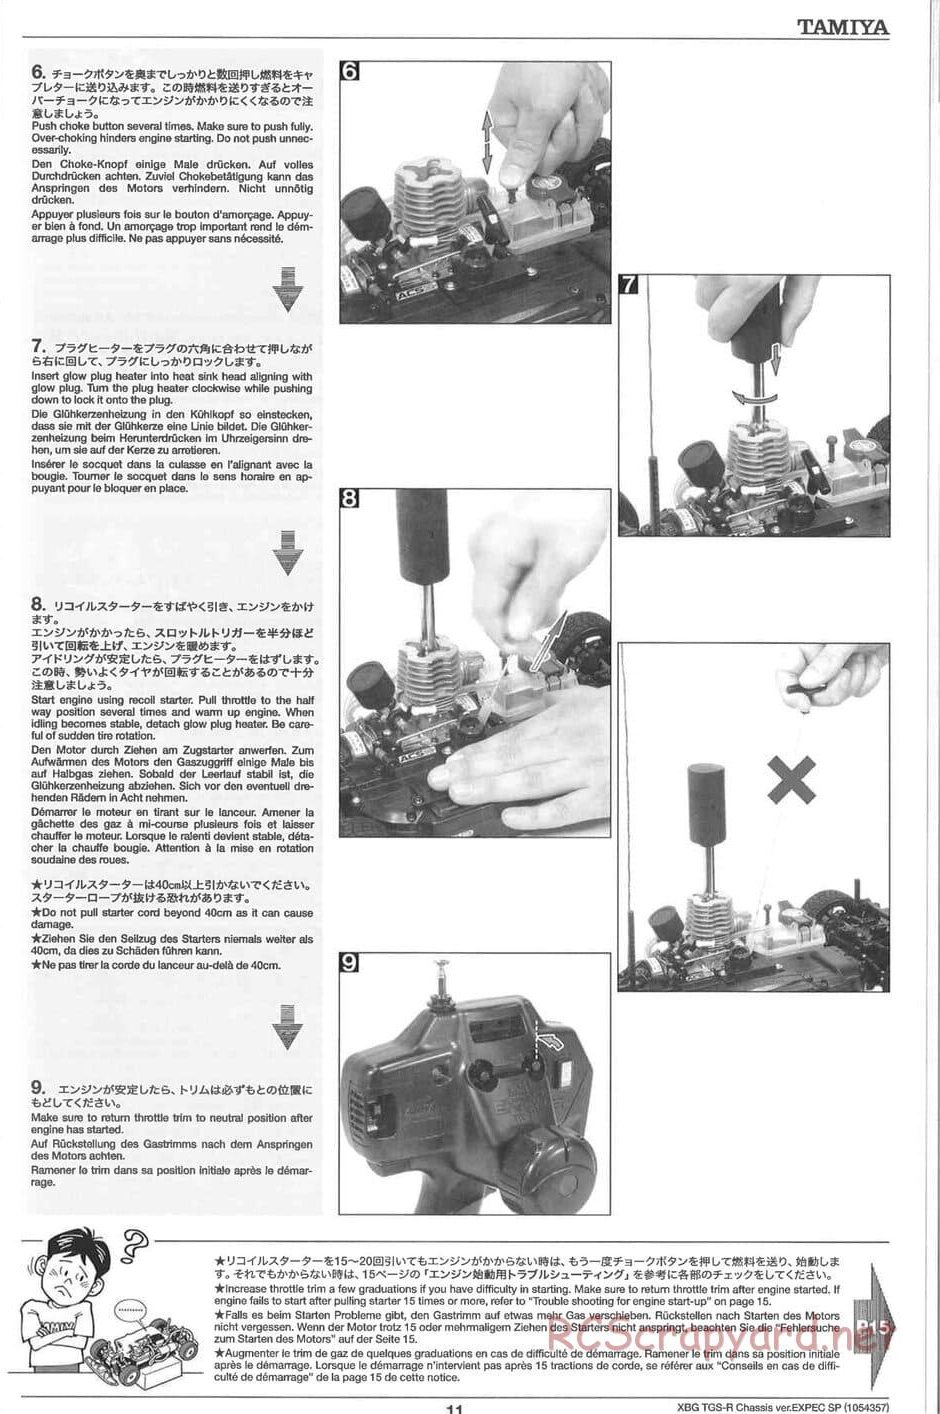 Tamiya - TGS-R Chassis - Manual - Page 11